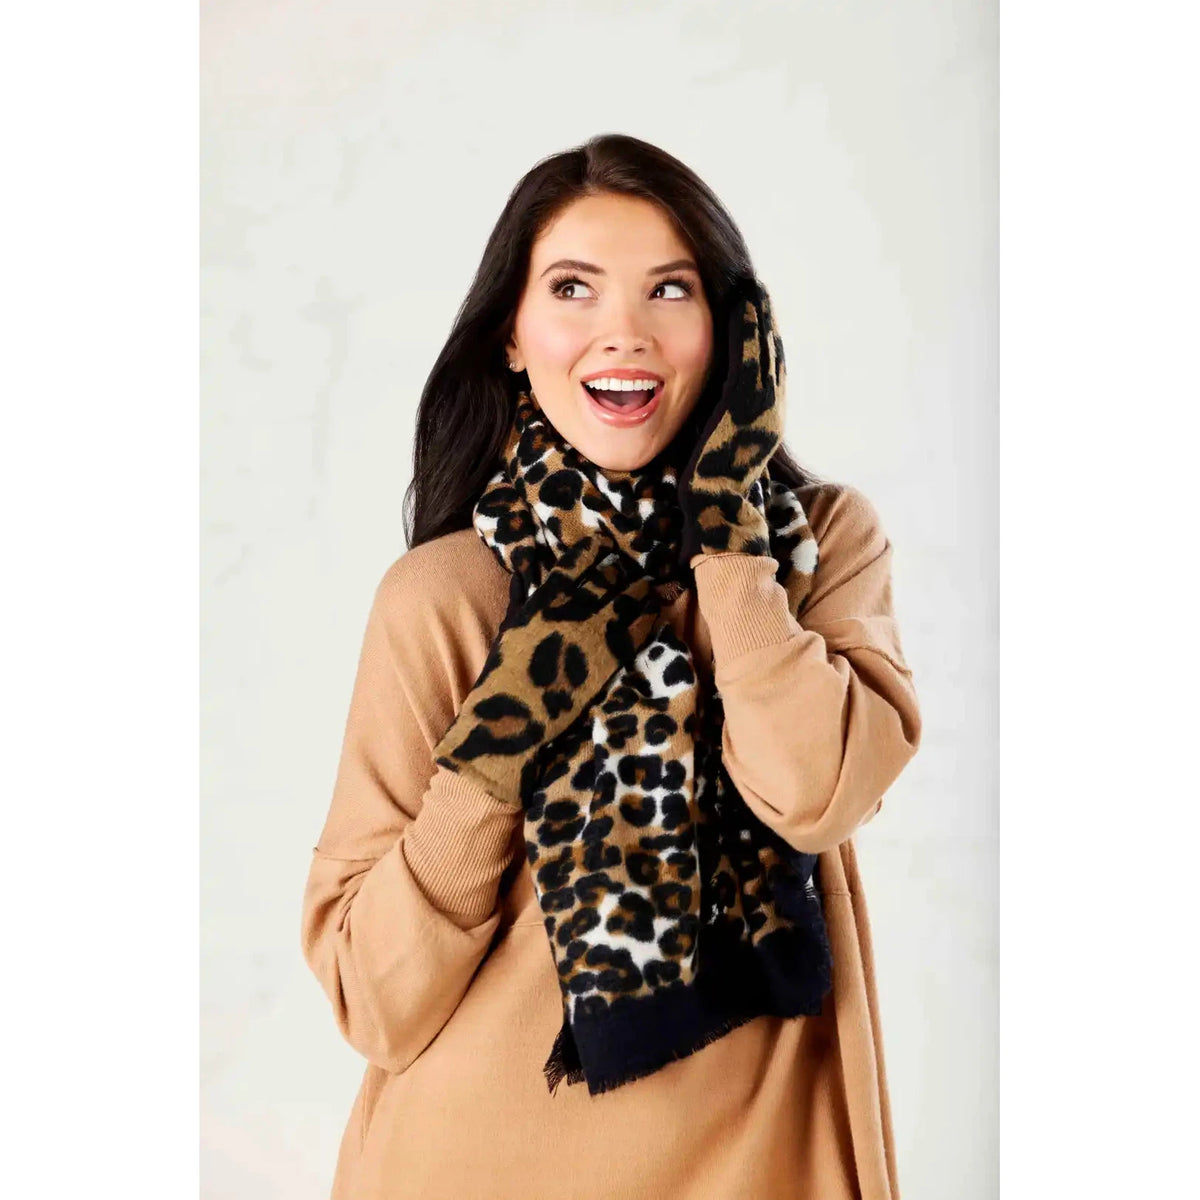 Leopard Scarf/Gloves Gift Set